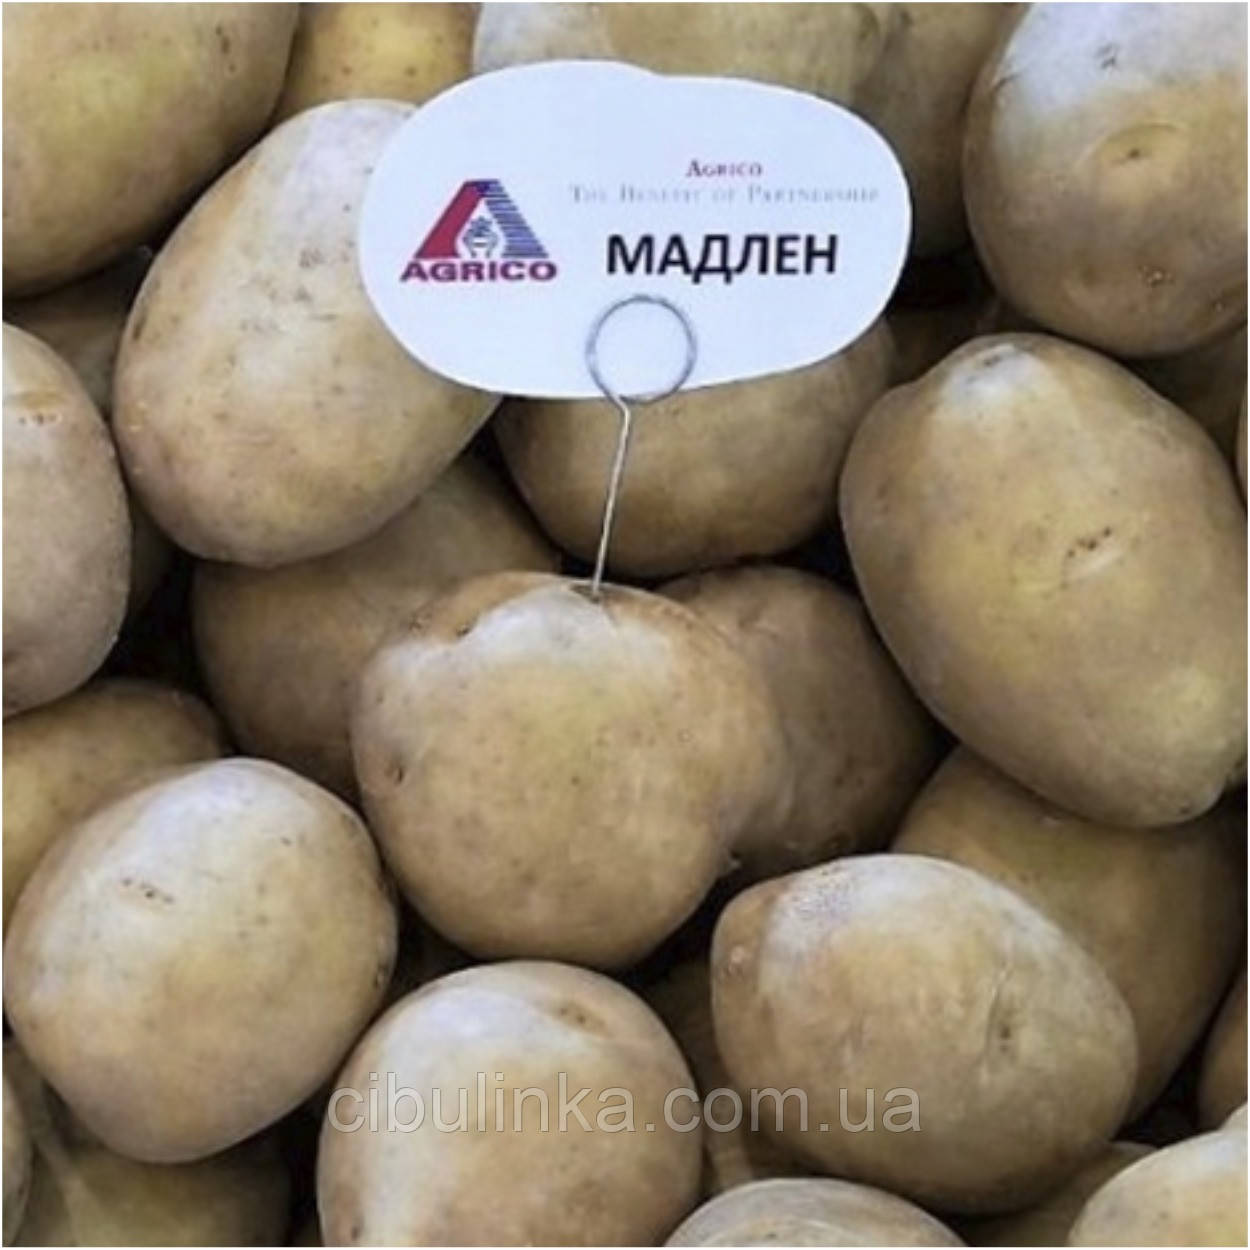 Картопля насіння Agrico Голландія, сорт Мадлен (середнерань), 2,5 кг